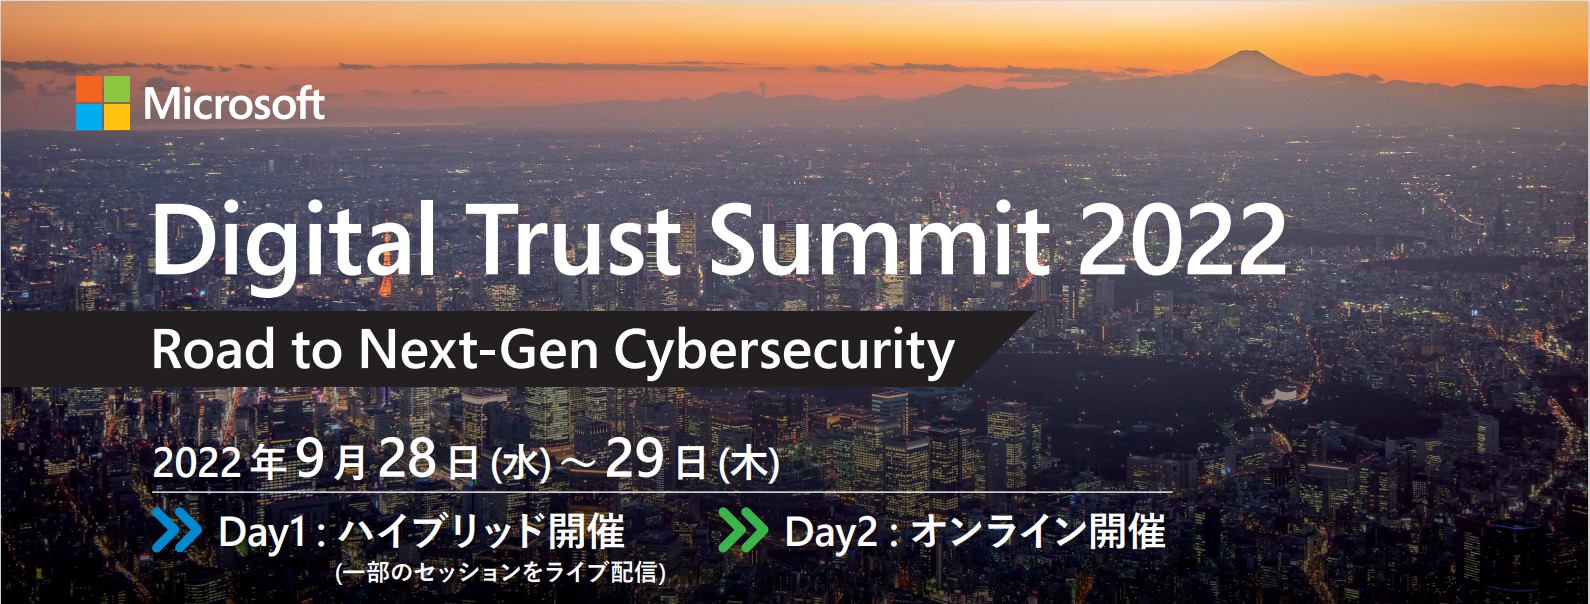 Digital Trust Summit 2022 にサテライト会場として参加します